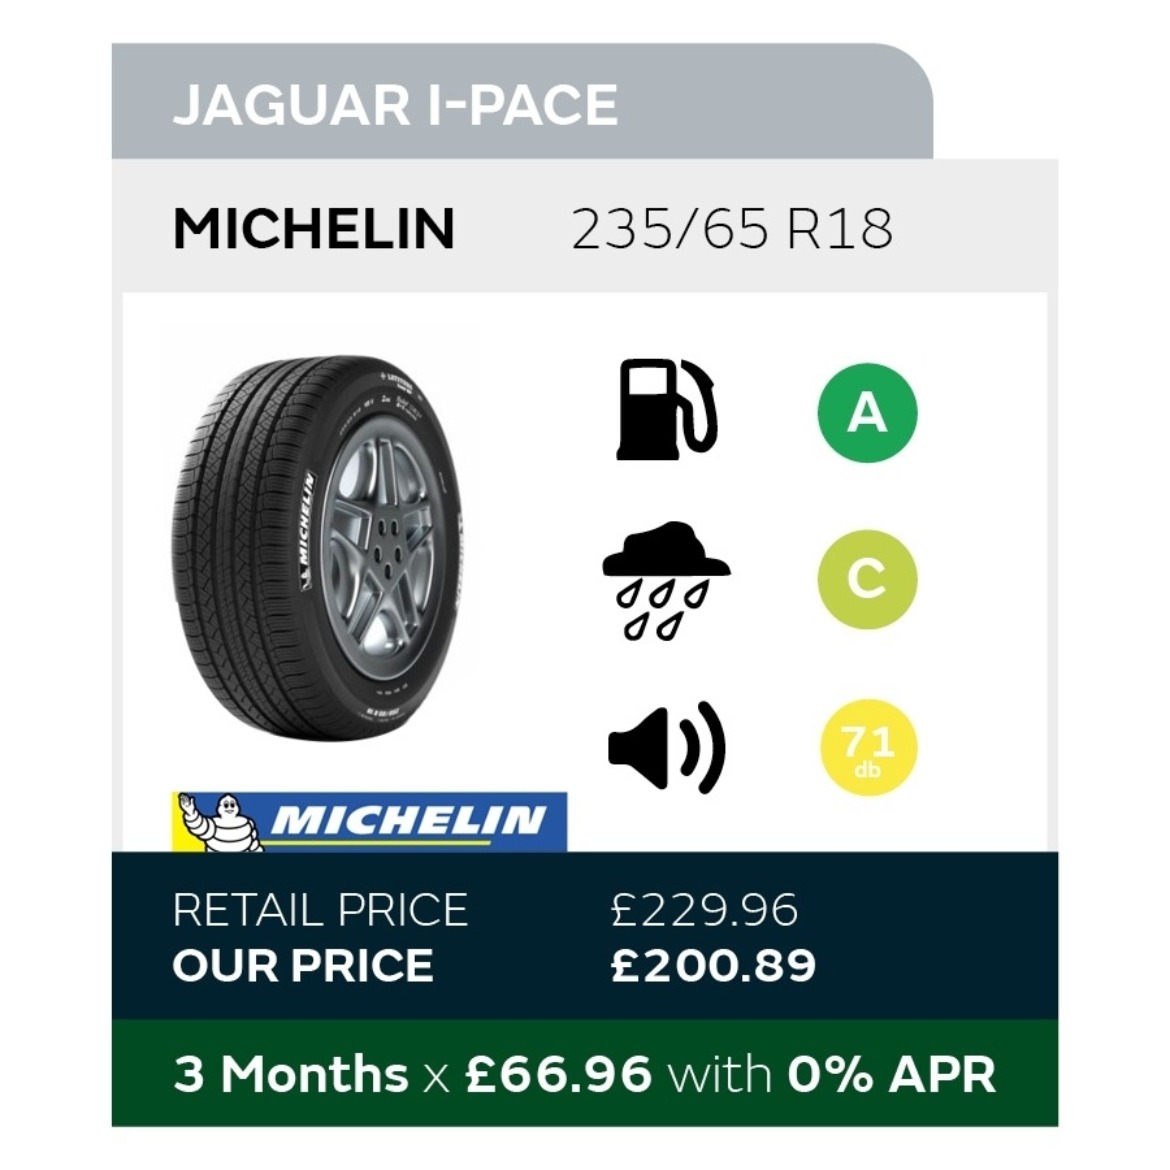 Jaguar I-Pace Tyre Offer